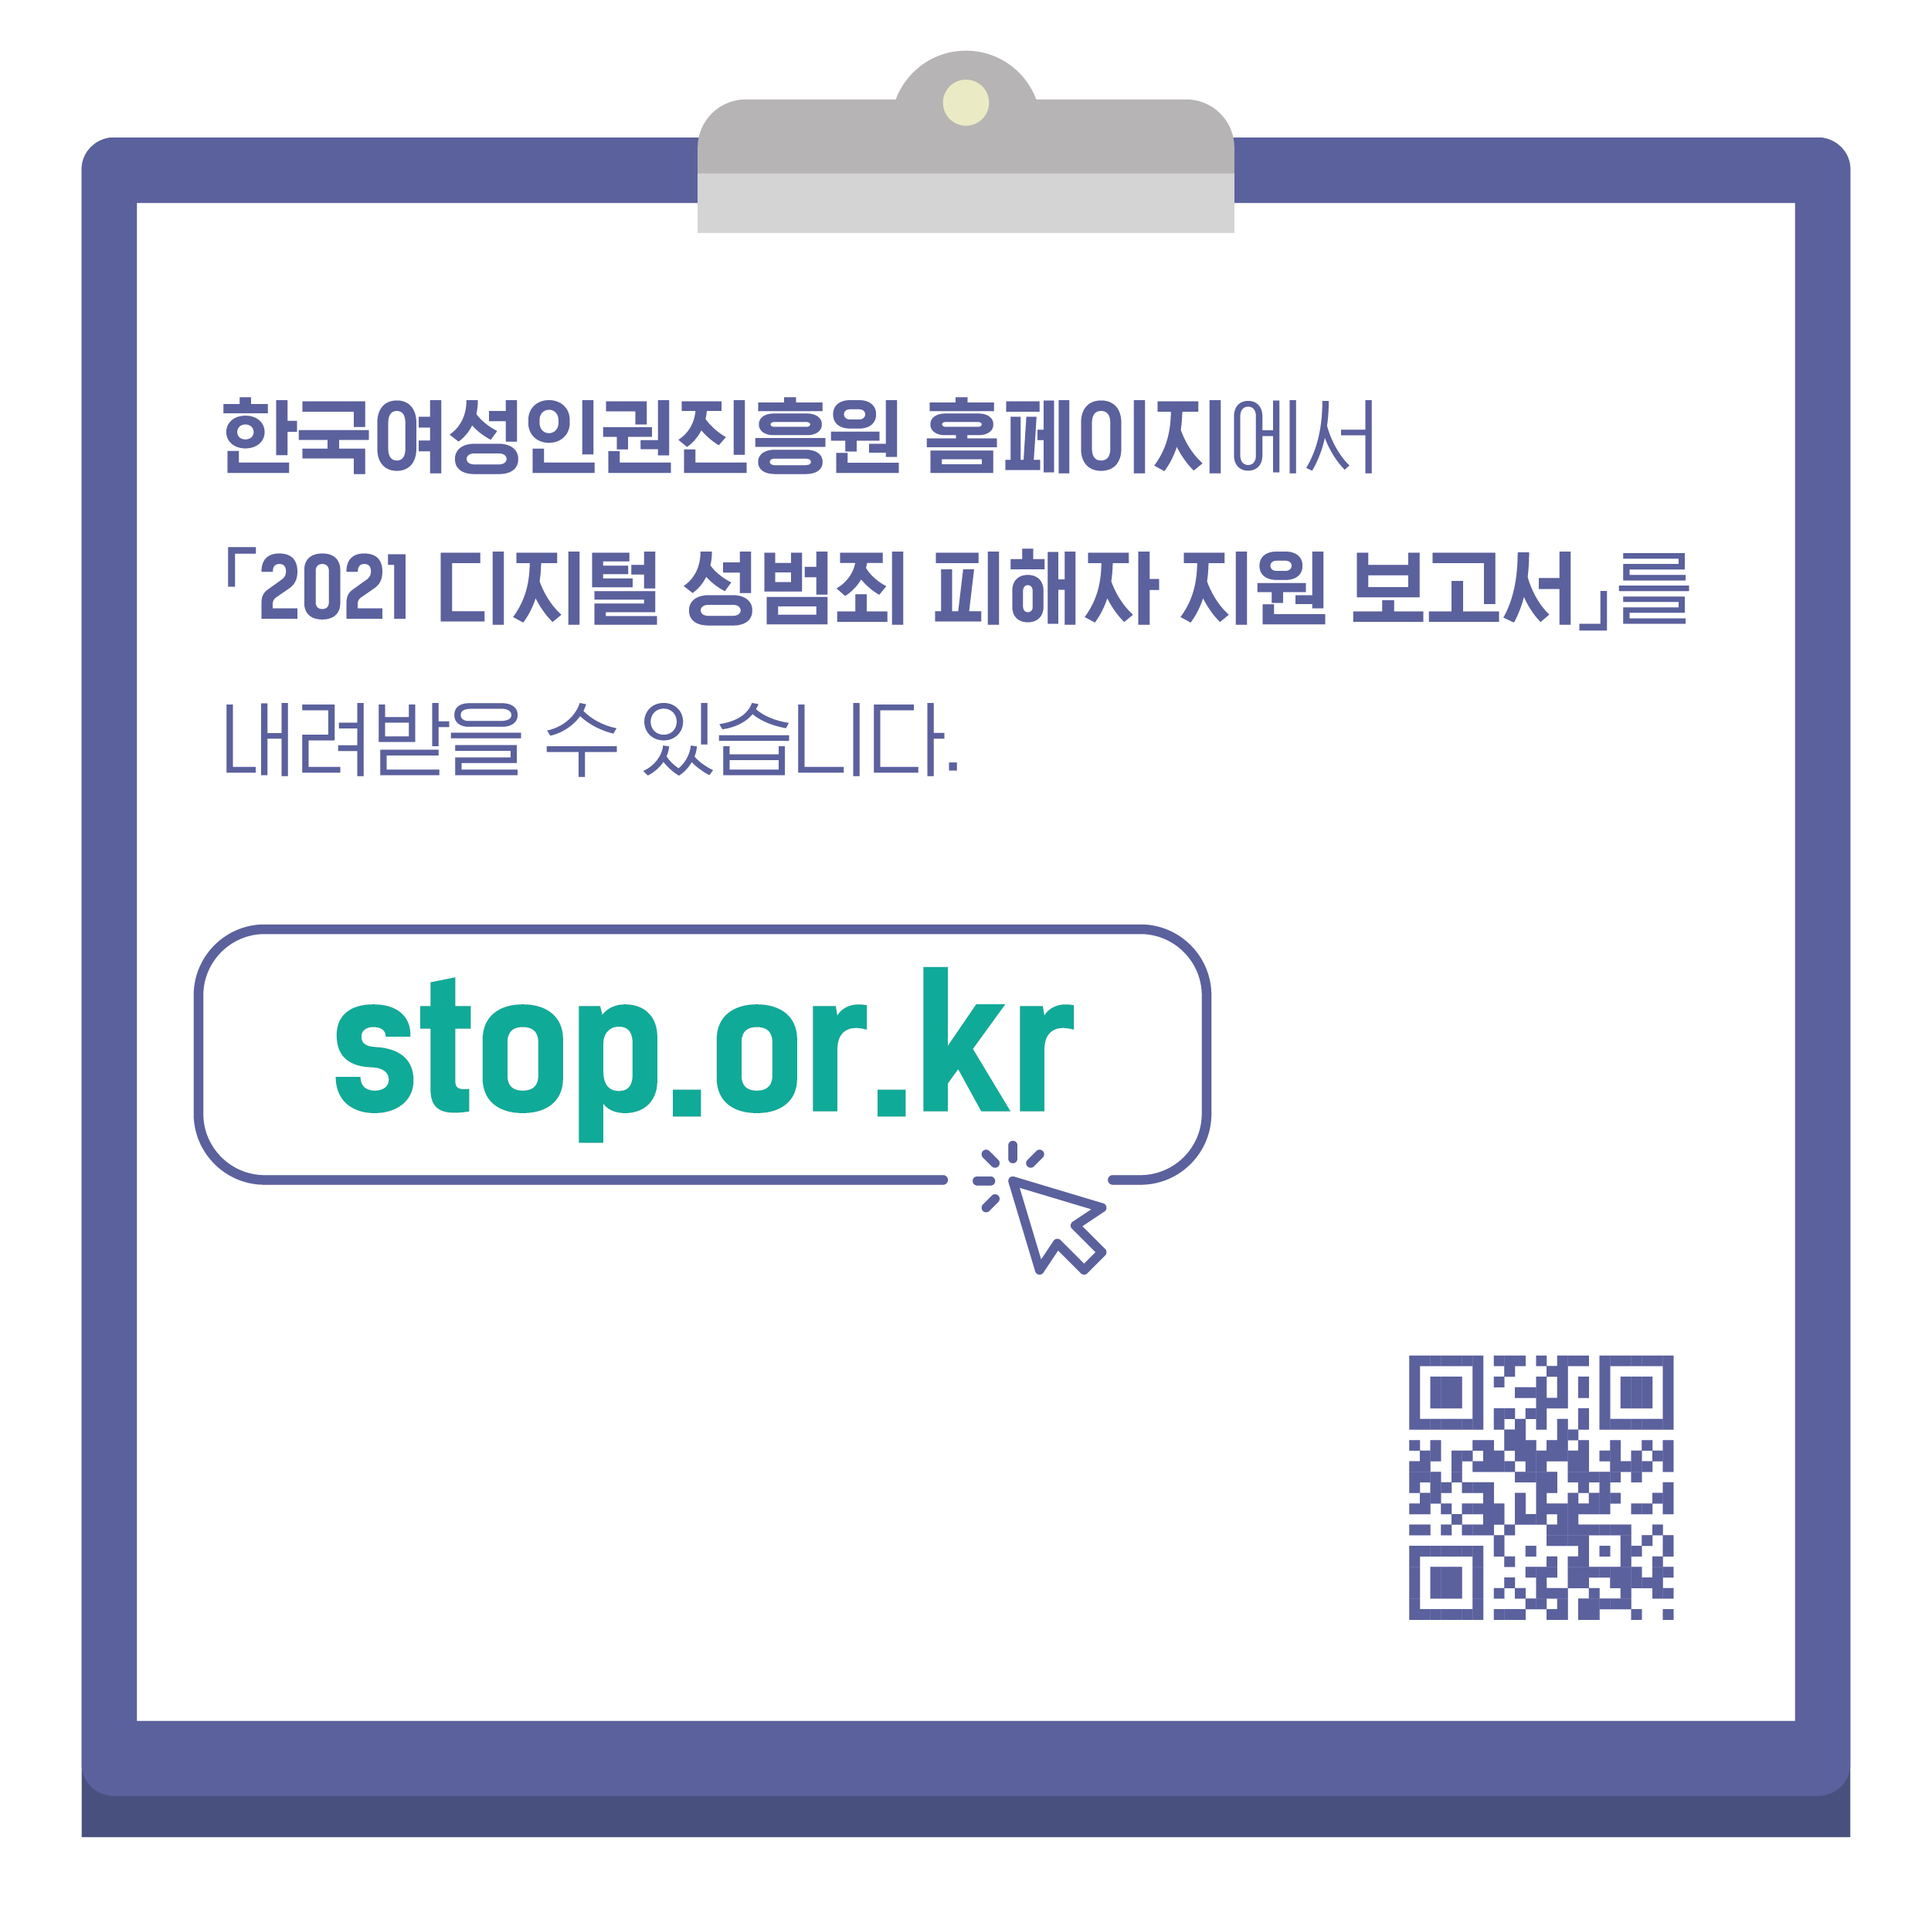 한국여성인권진흥원 홈페이지에서 2021 디지털 성범죄 피해자 지원 보고서를 내려받을 수 있습니다. stop.or.kr 